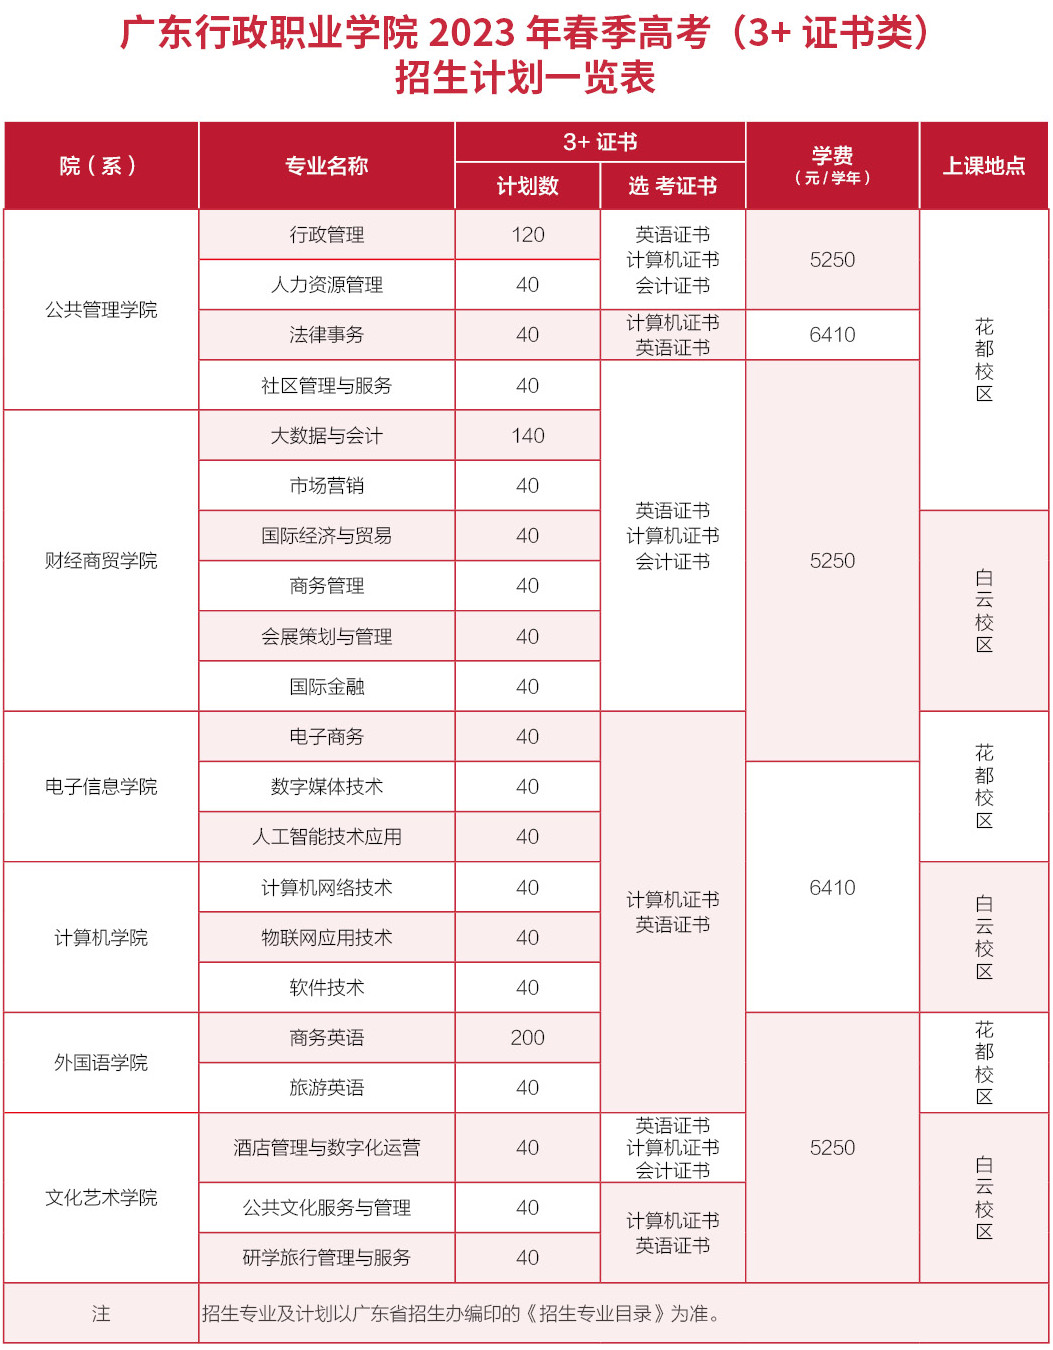  广东行政职业学院2023年3+证书招生计划